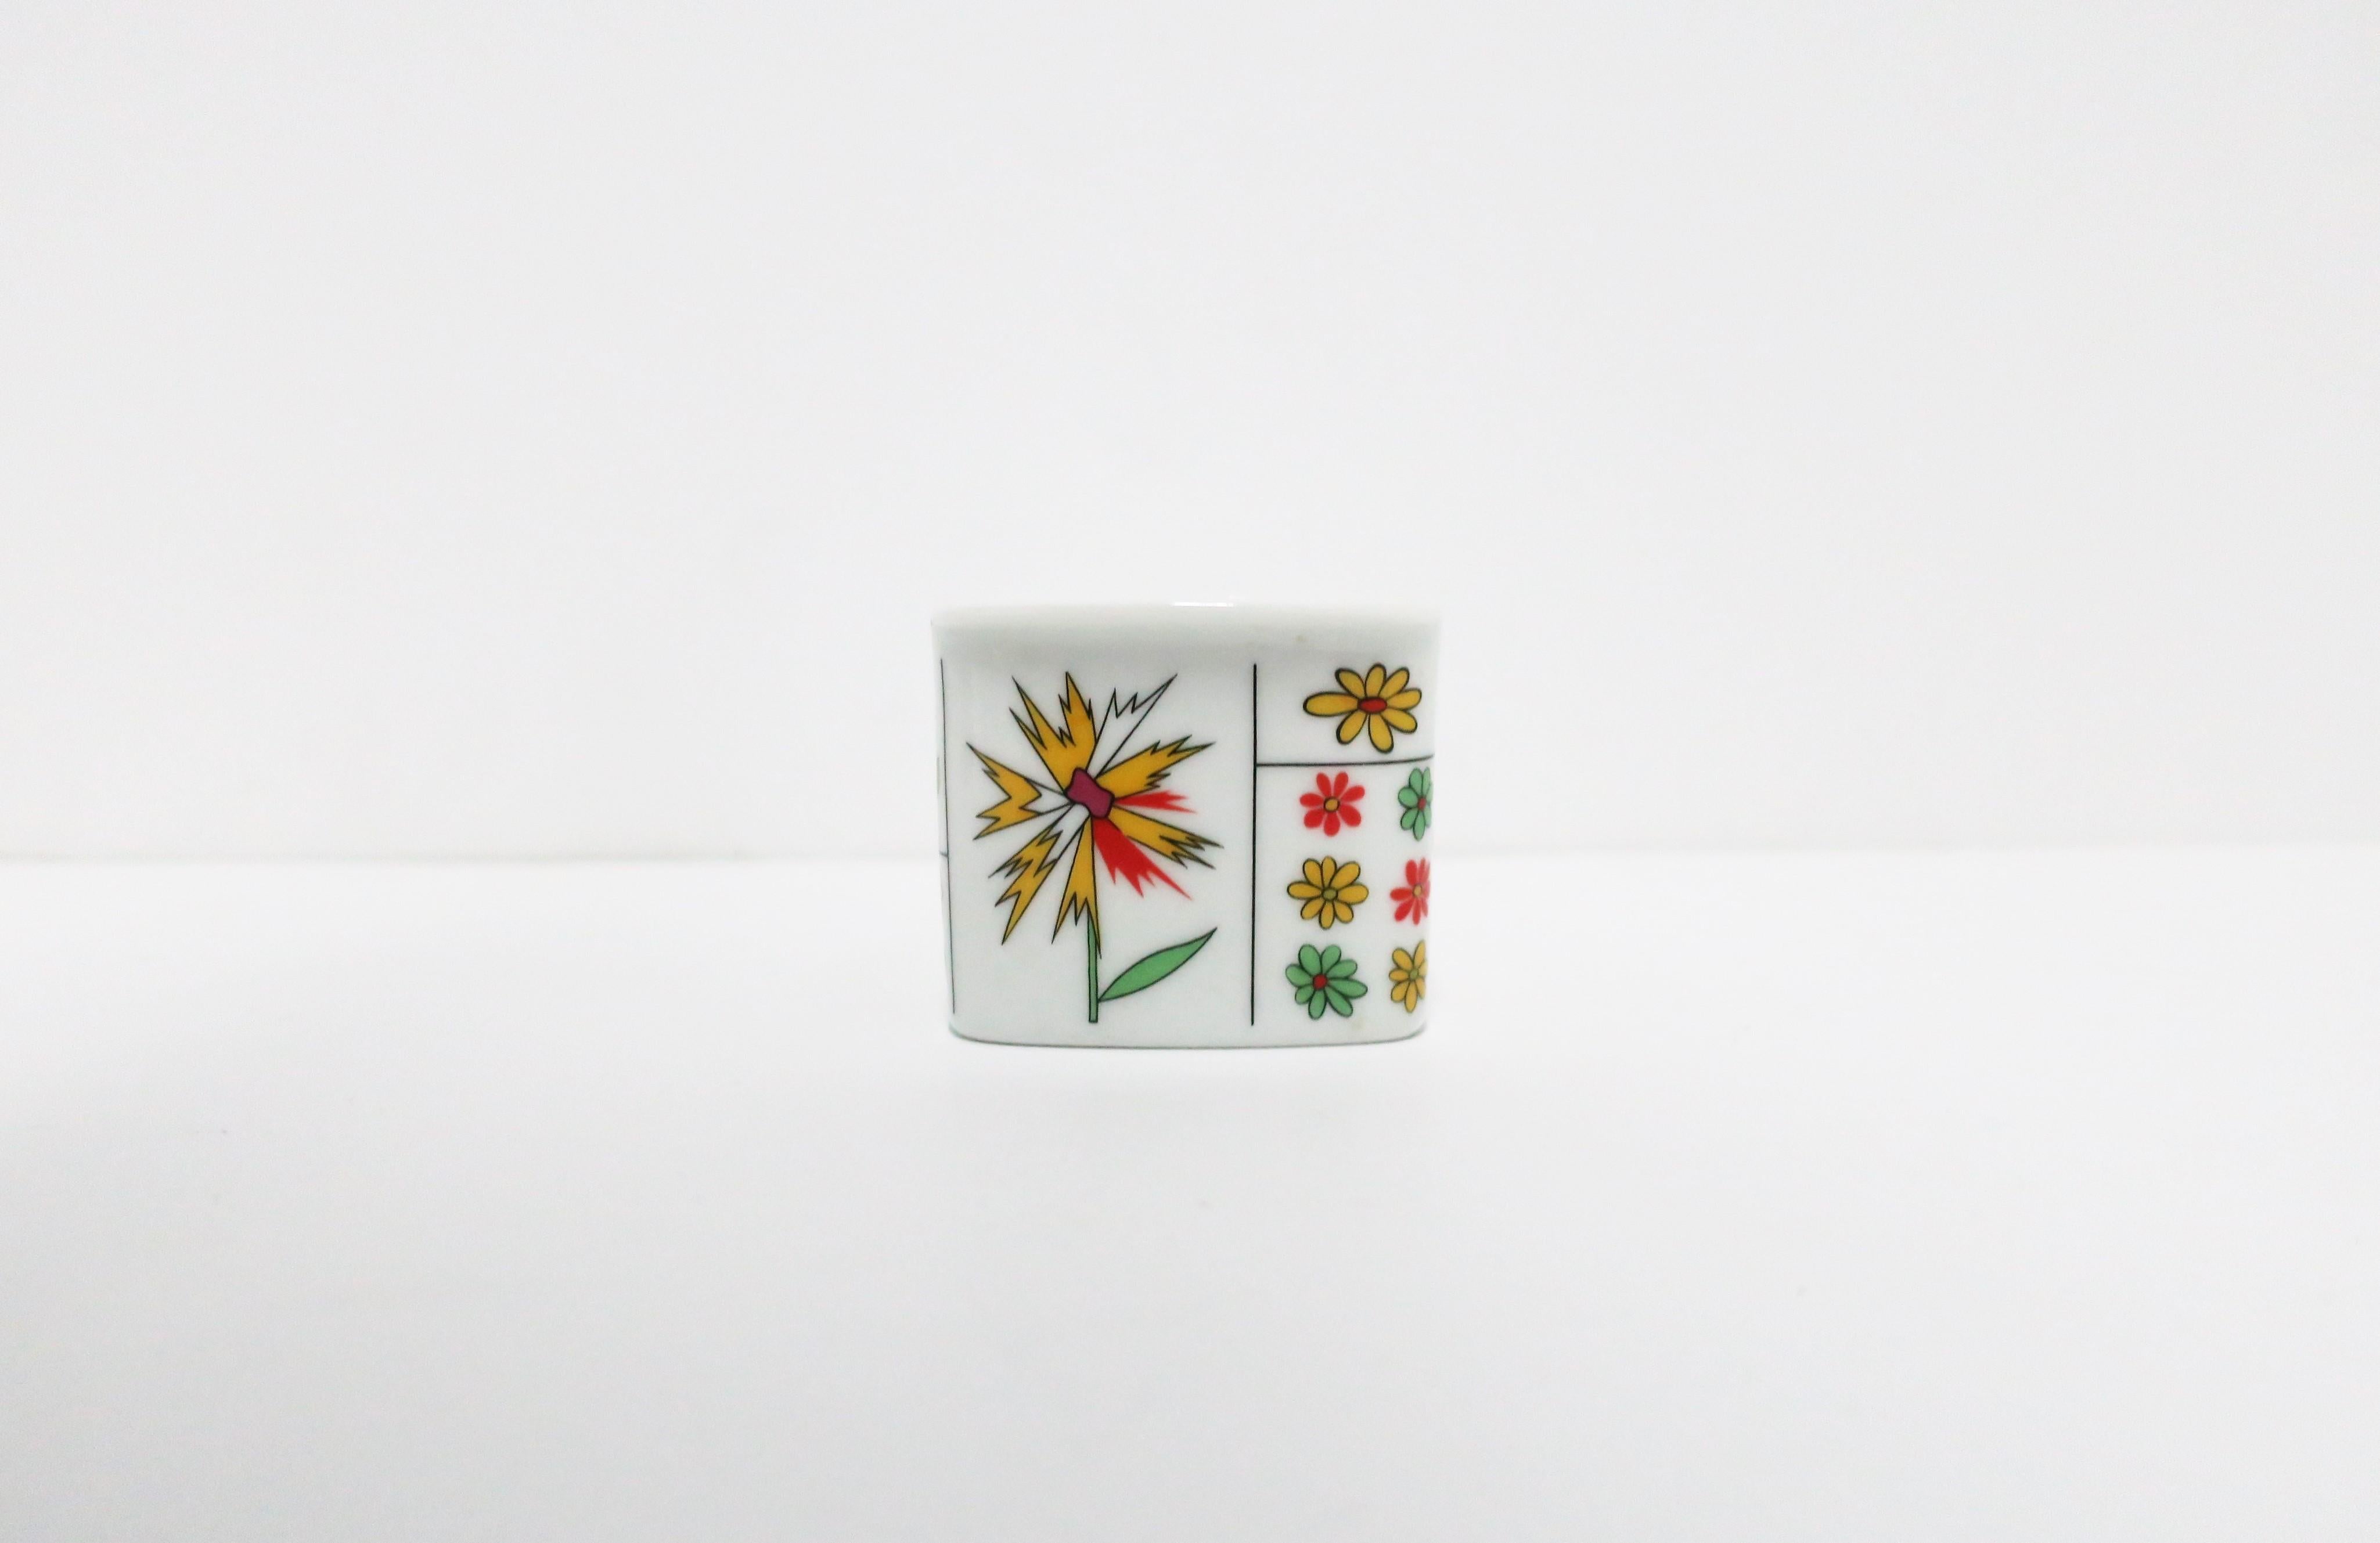 Kleines, schönes Porzellangefäß nach Entwürfen von Hans Theo Baumann und Emilio Pucci für Rosenthal 'Studio-Linie', Berlin, Ende des 20. Jahrhunderts, Deutschland. Es handelt sich um ein glasiertes weißes Porzellan mit einem farbenfrohen Blumen- und